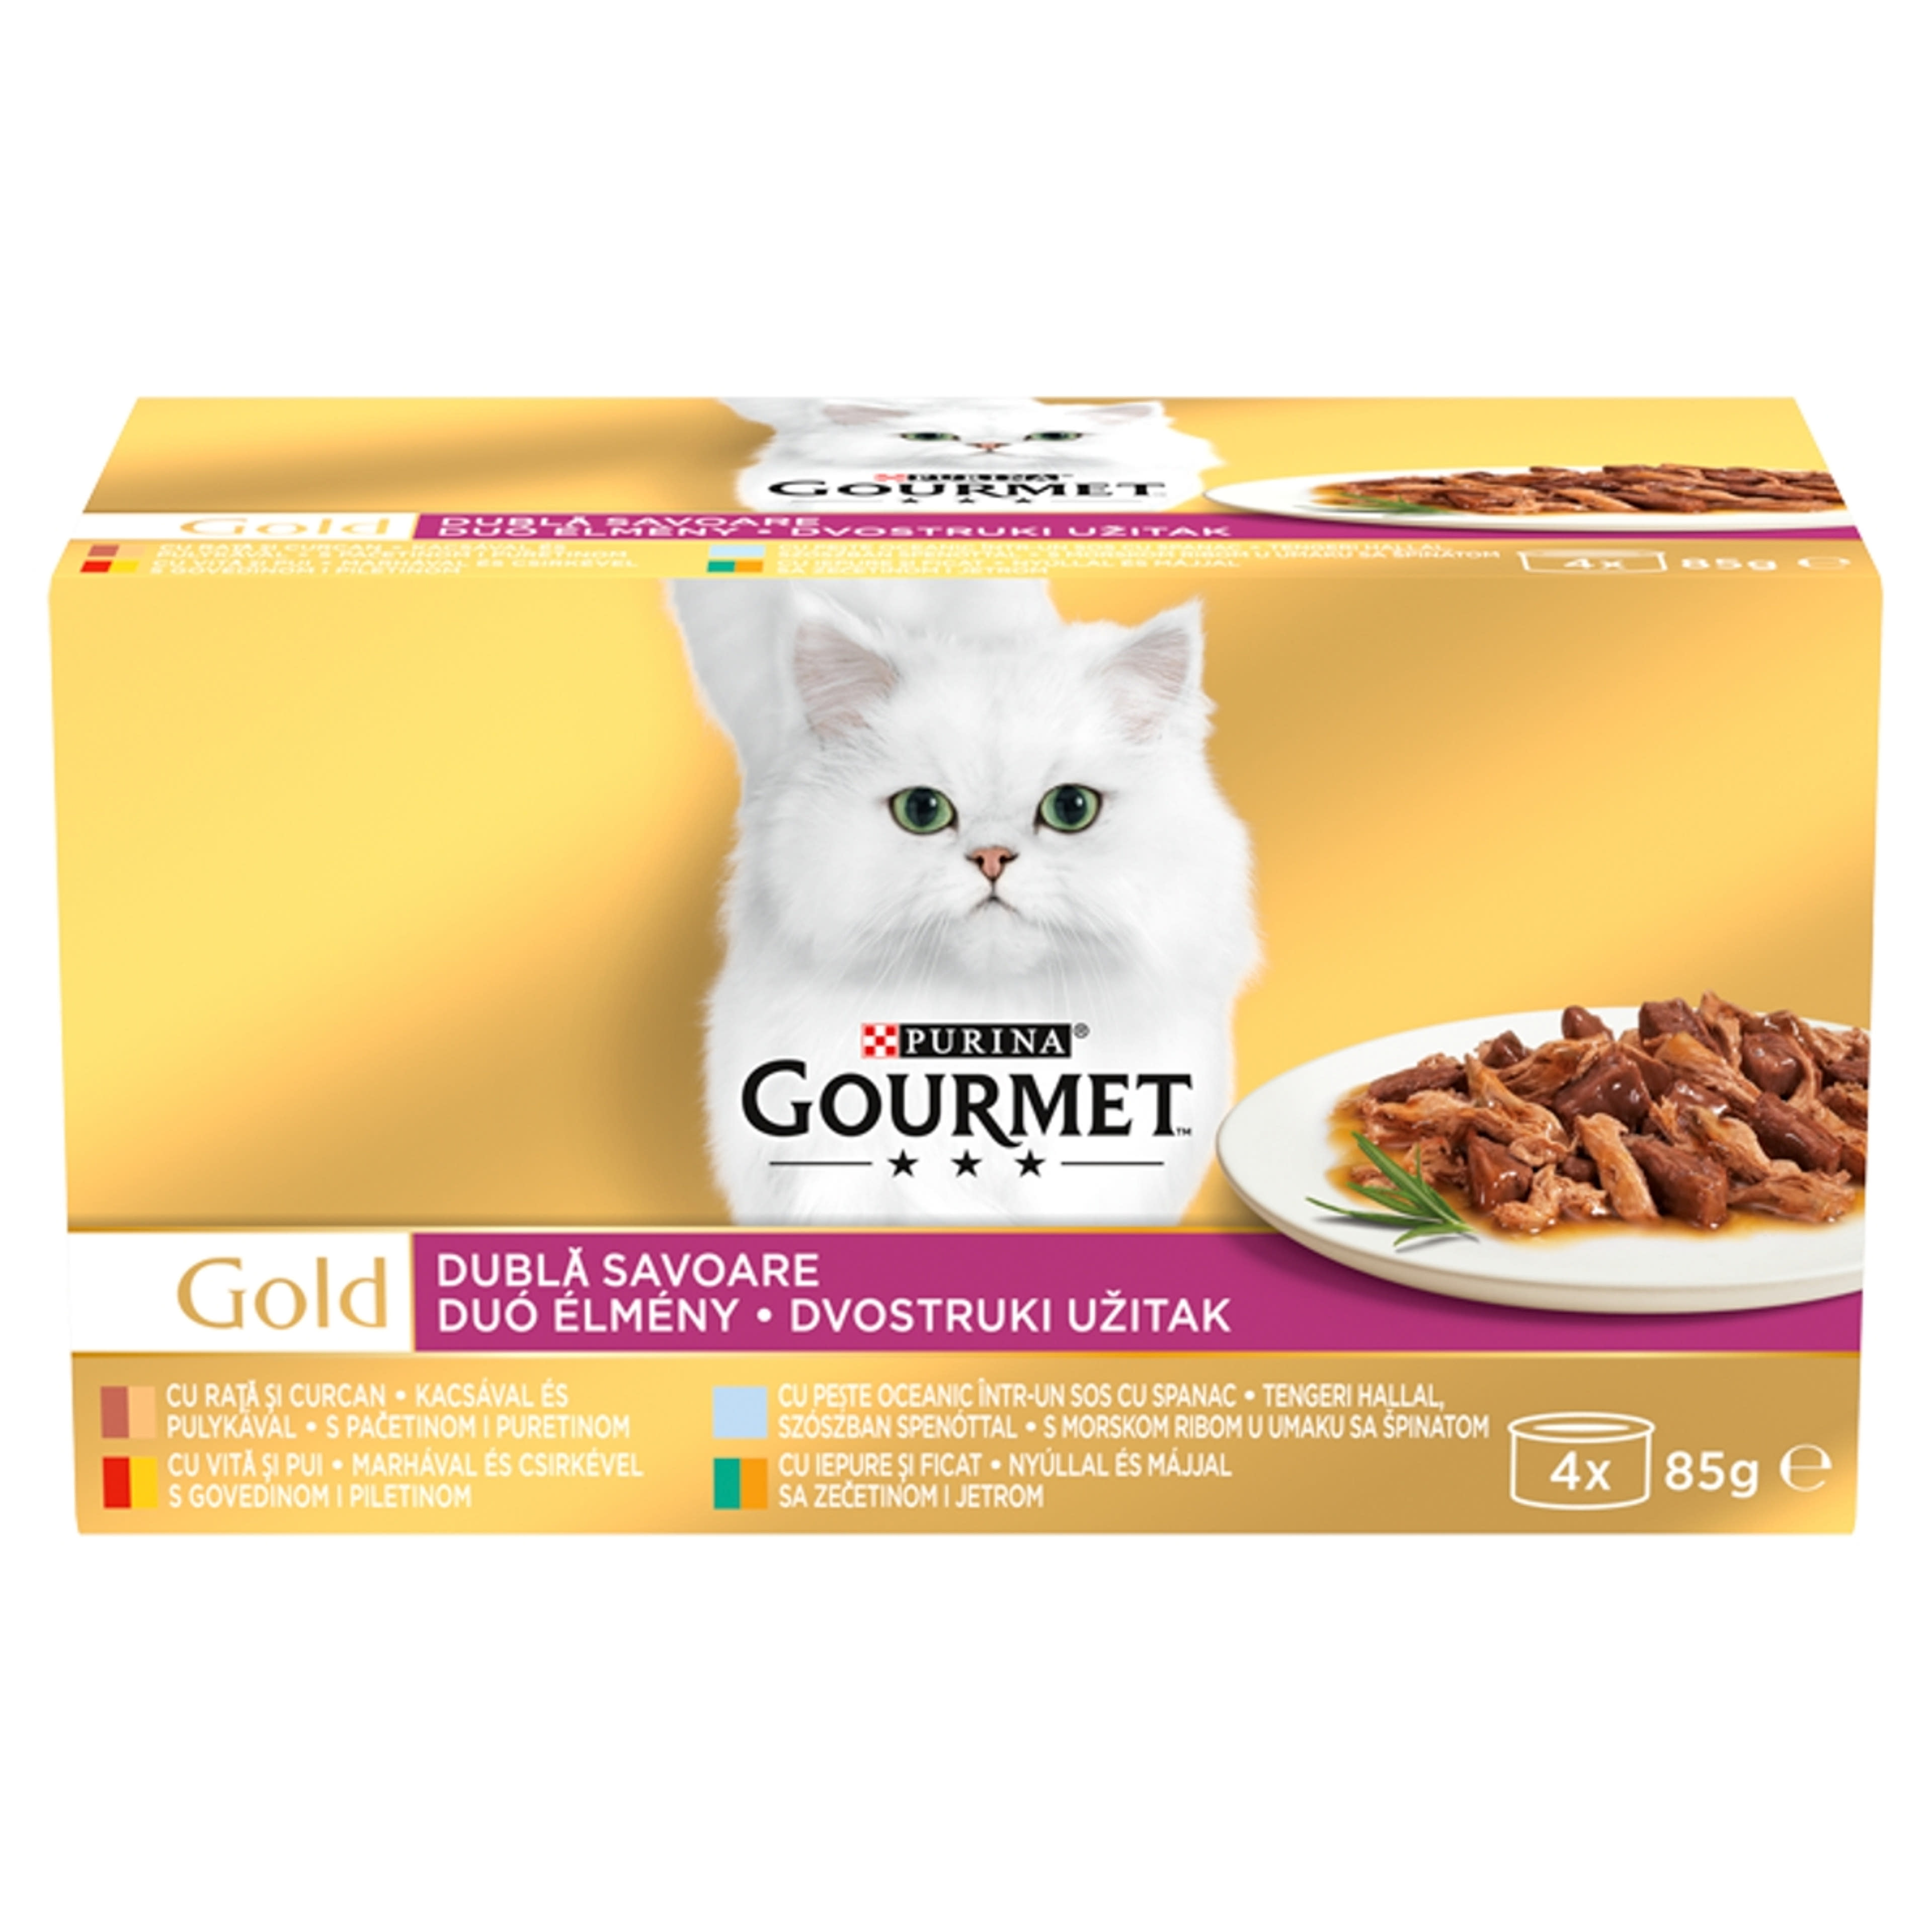 Gourmet Gold Duo Élmény felnőtt teljes értékű konzerv macskáknak, 4 ízben (4x85 g) - 340 g-1